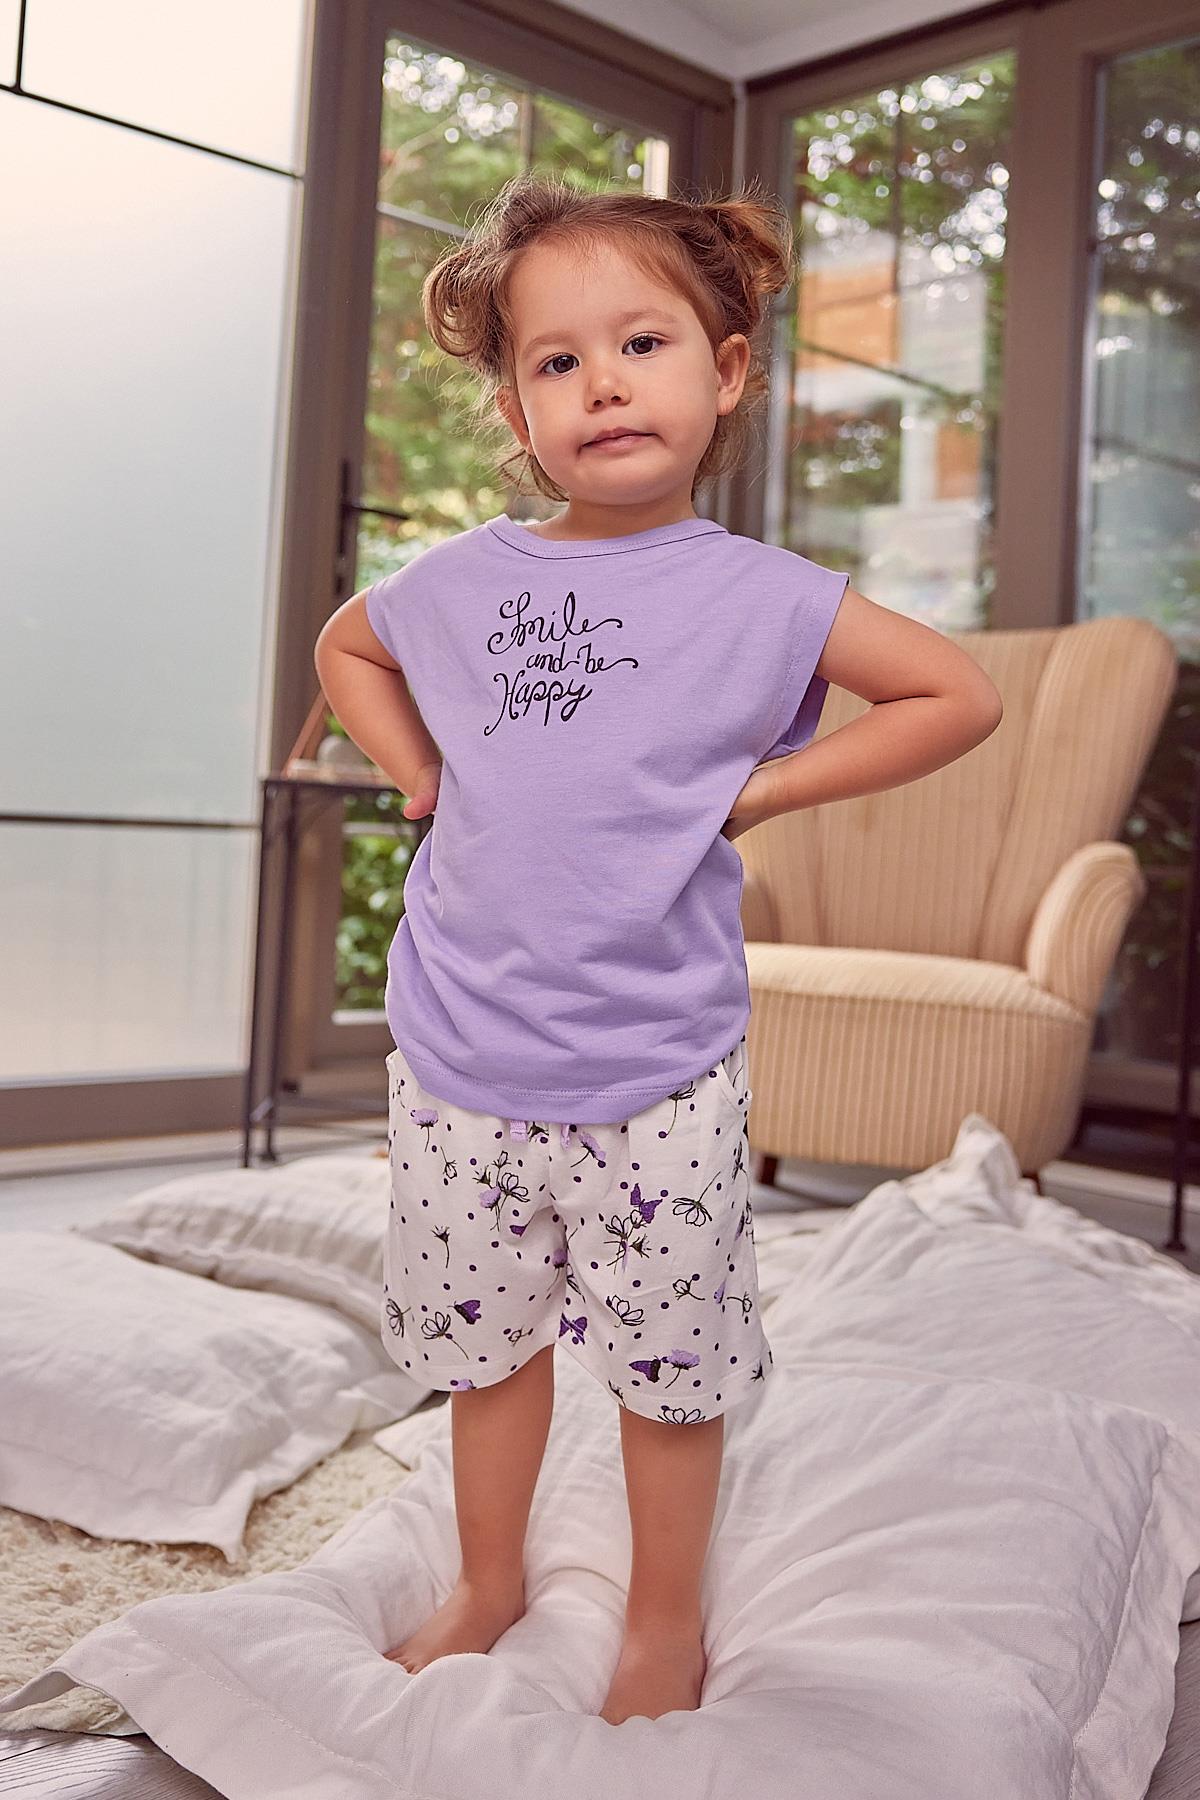 Kız Çocuk Kısa Kollu Pijama Takımı-1